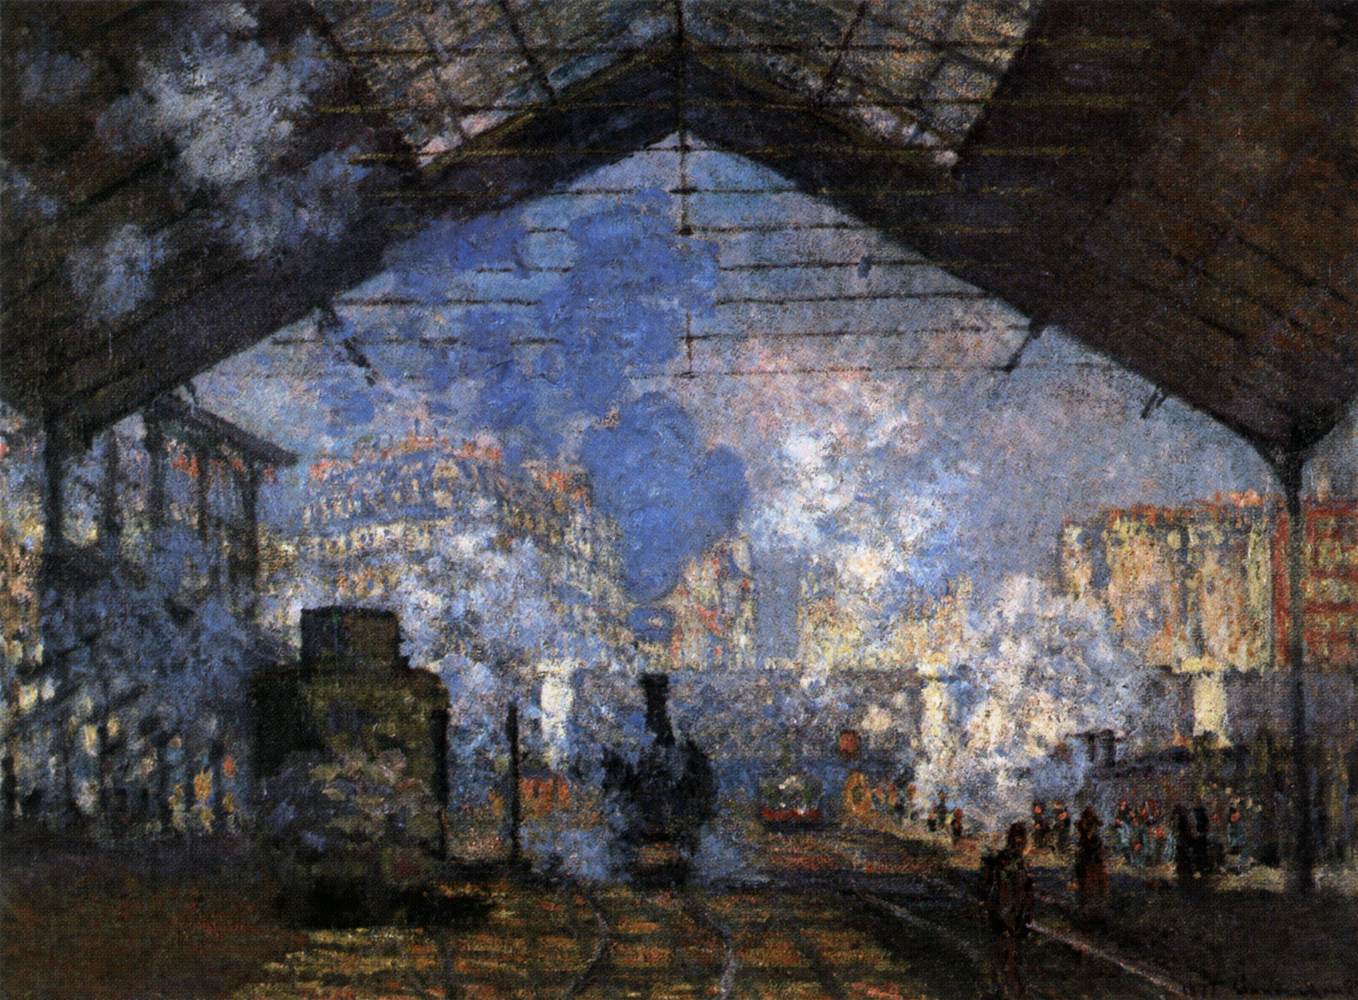 Bahnhof Saint-Lazare by Claude Monet - 1877 - 76 x 104 cm Musée d'Orsay